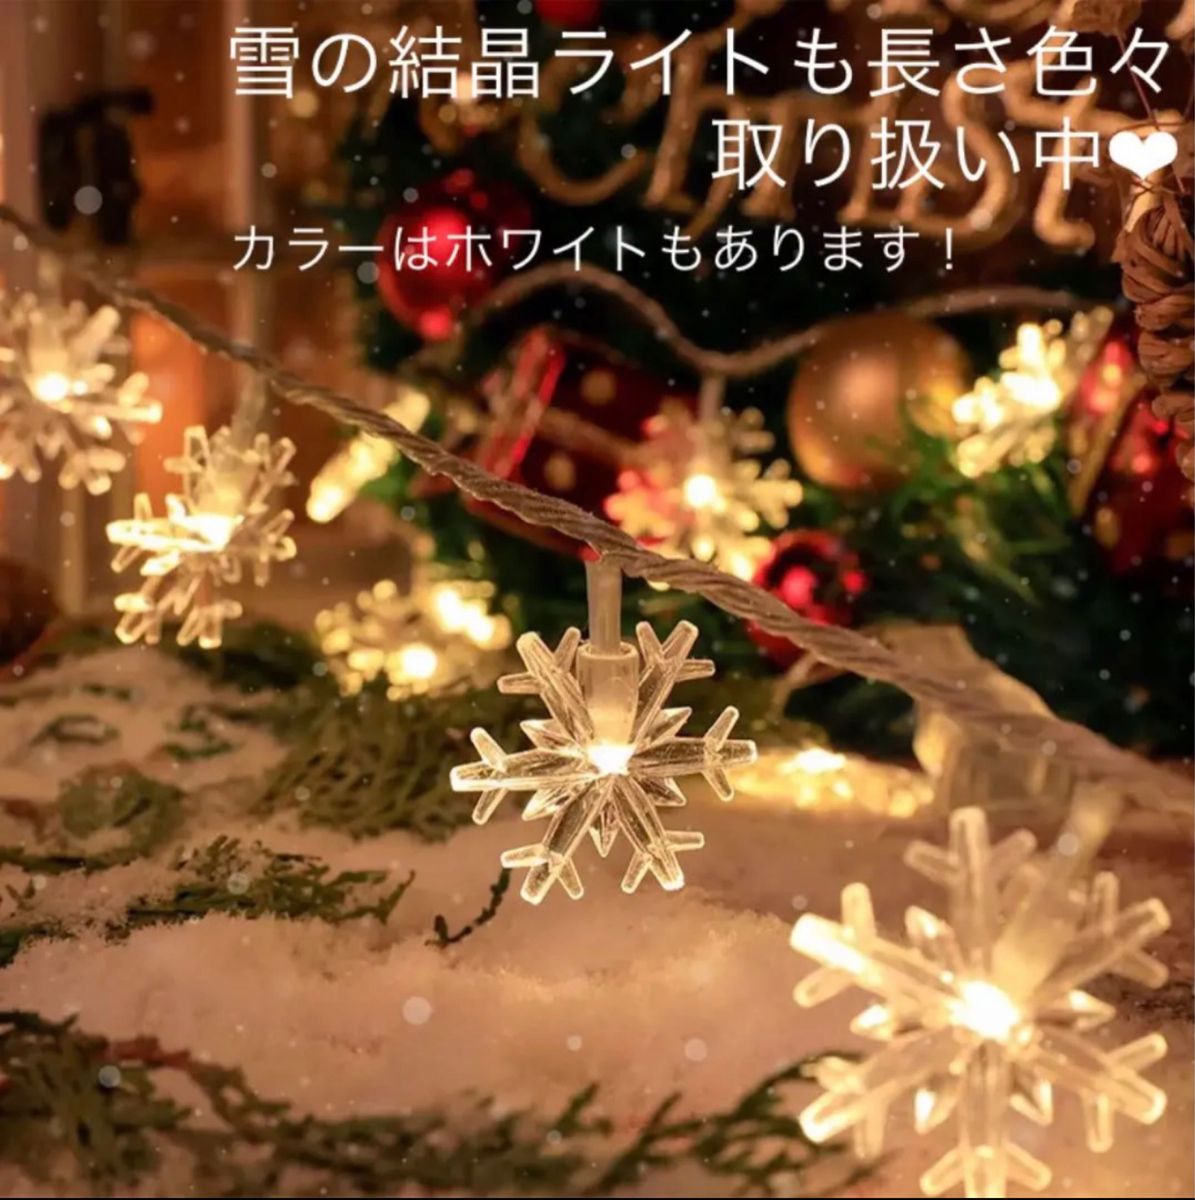 クリスマス 便利 セット サンタ 雪だるま ツリー くつ下 靴下 パーティー用品 冬 飾り付け 手軽で楽しいバルーンデコレーション